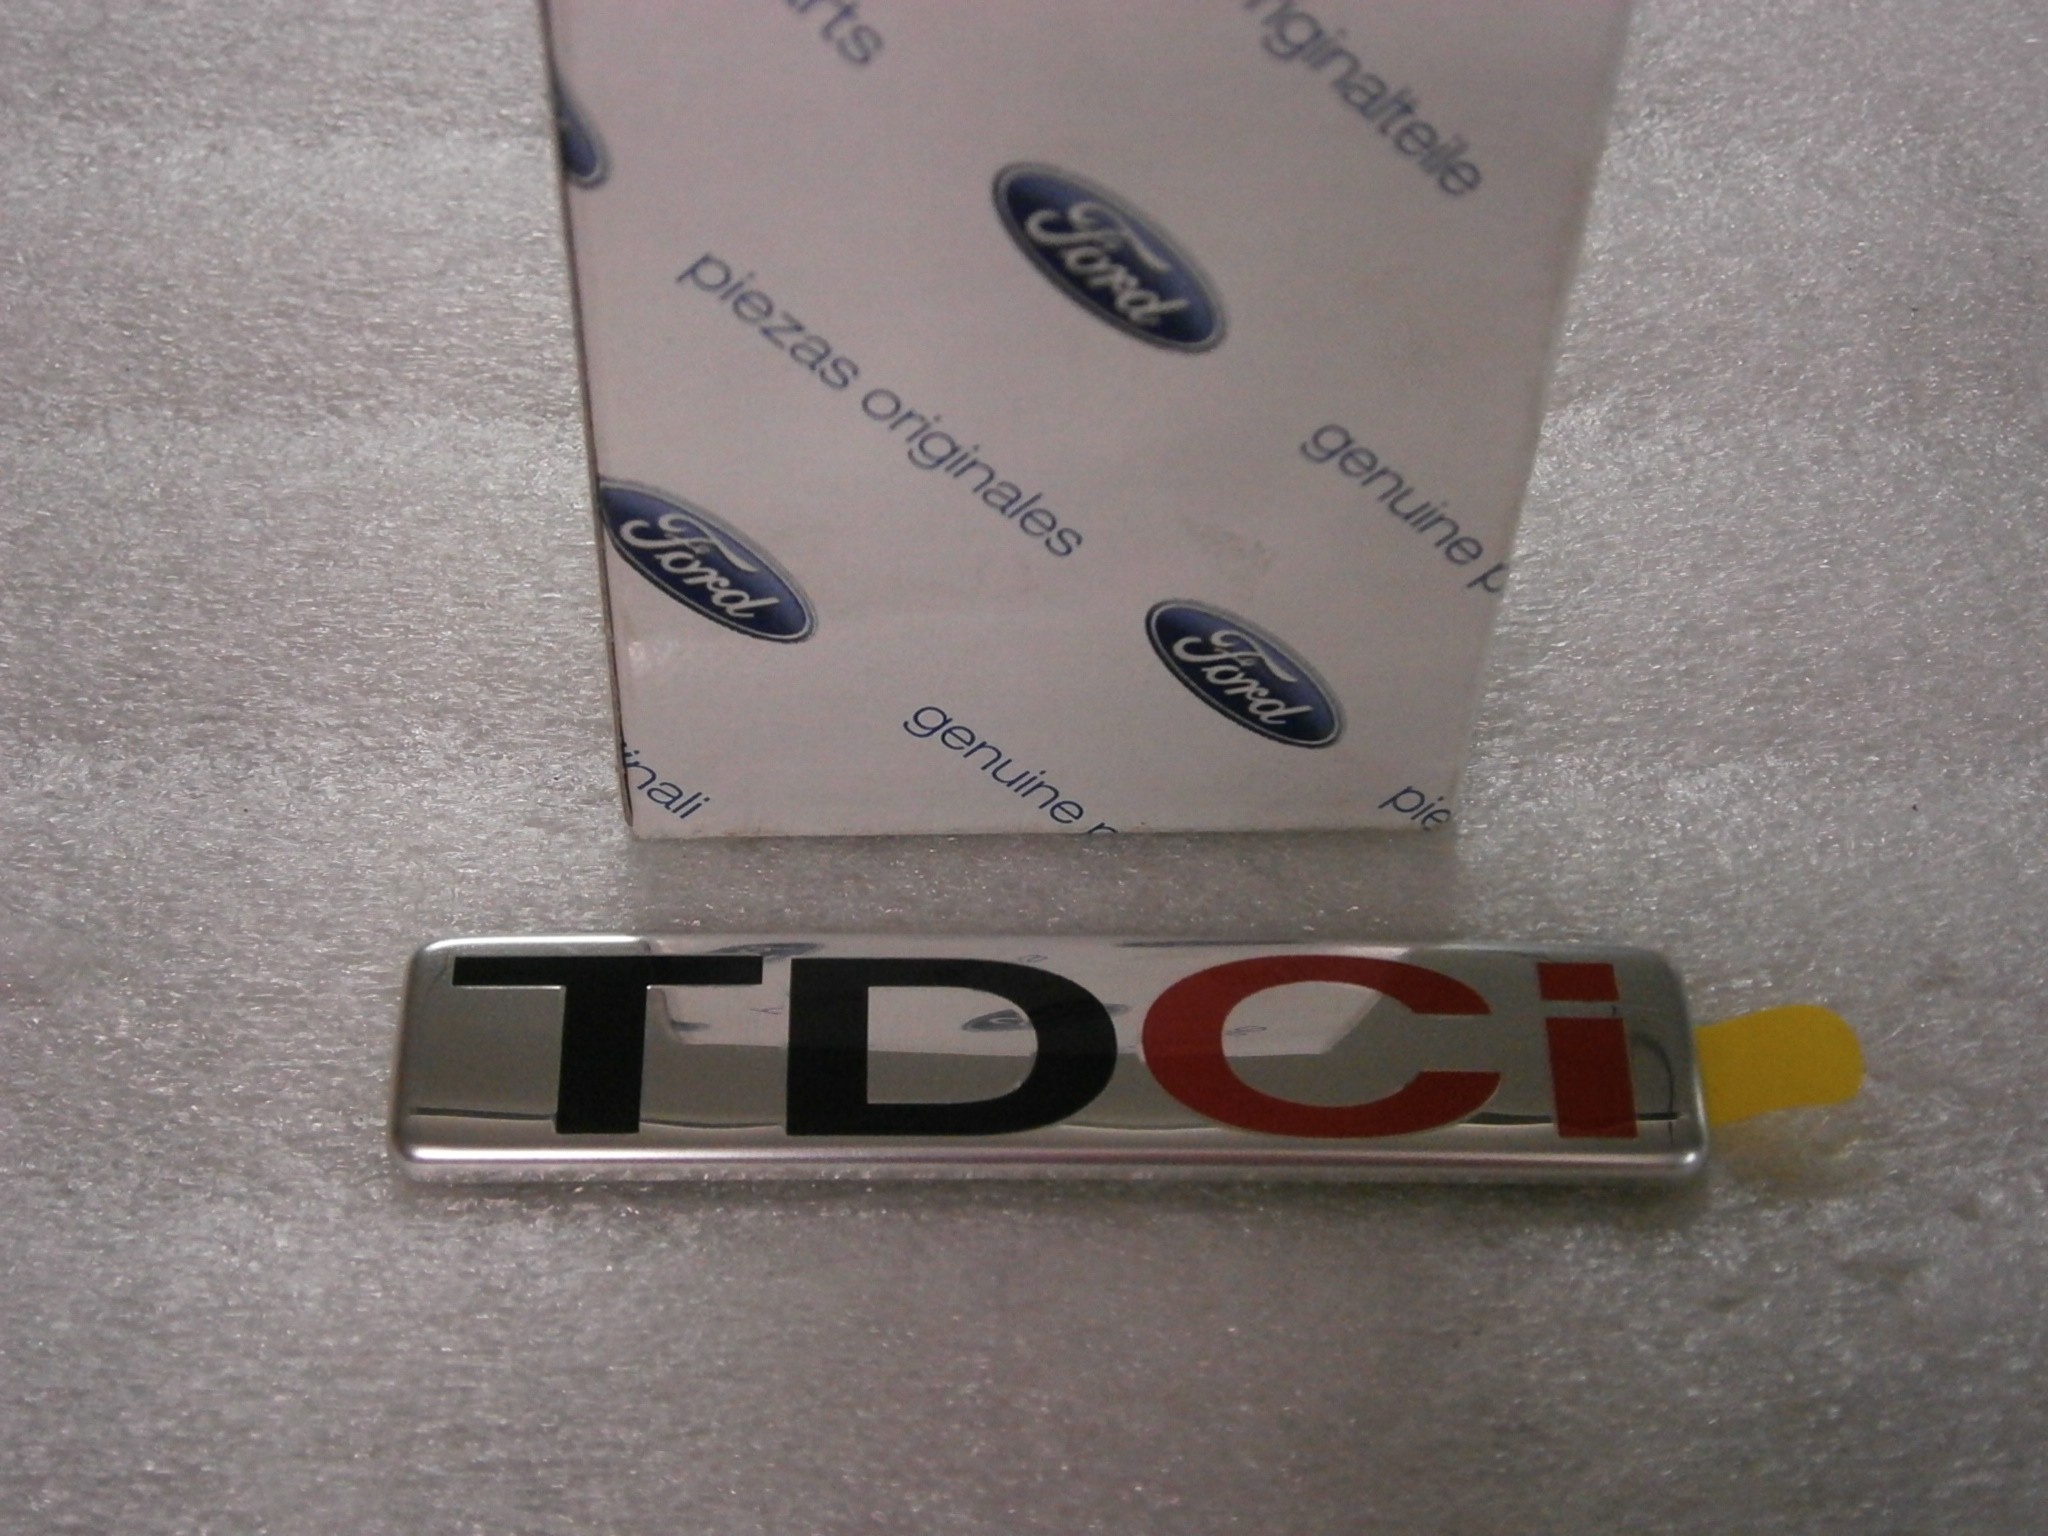 1375710-Ford Original TDCi Schriftzug hinten Ford Fusion 2002-2012